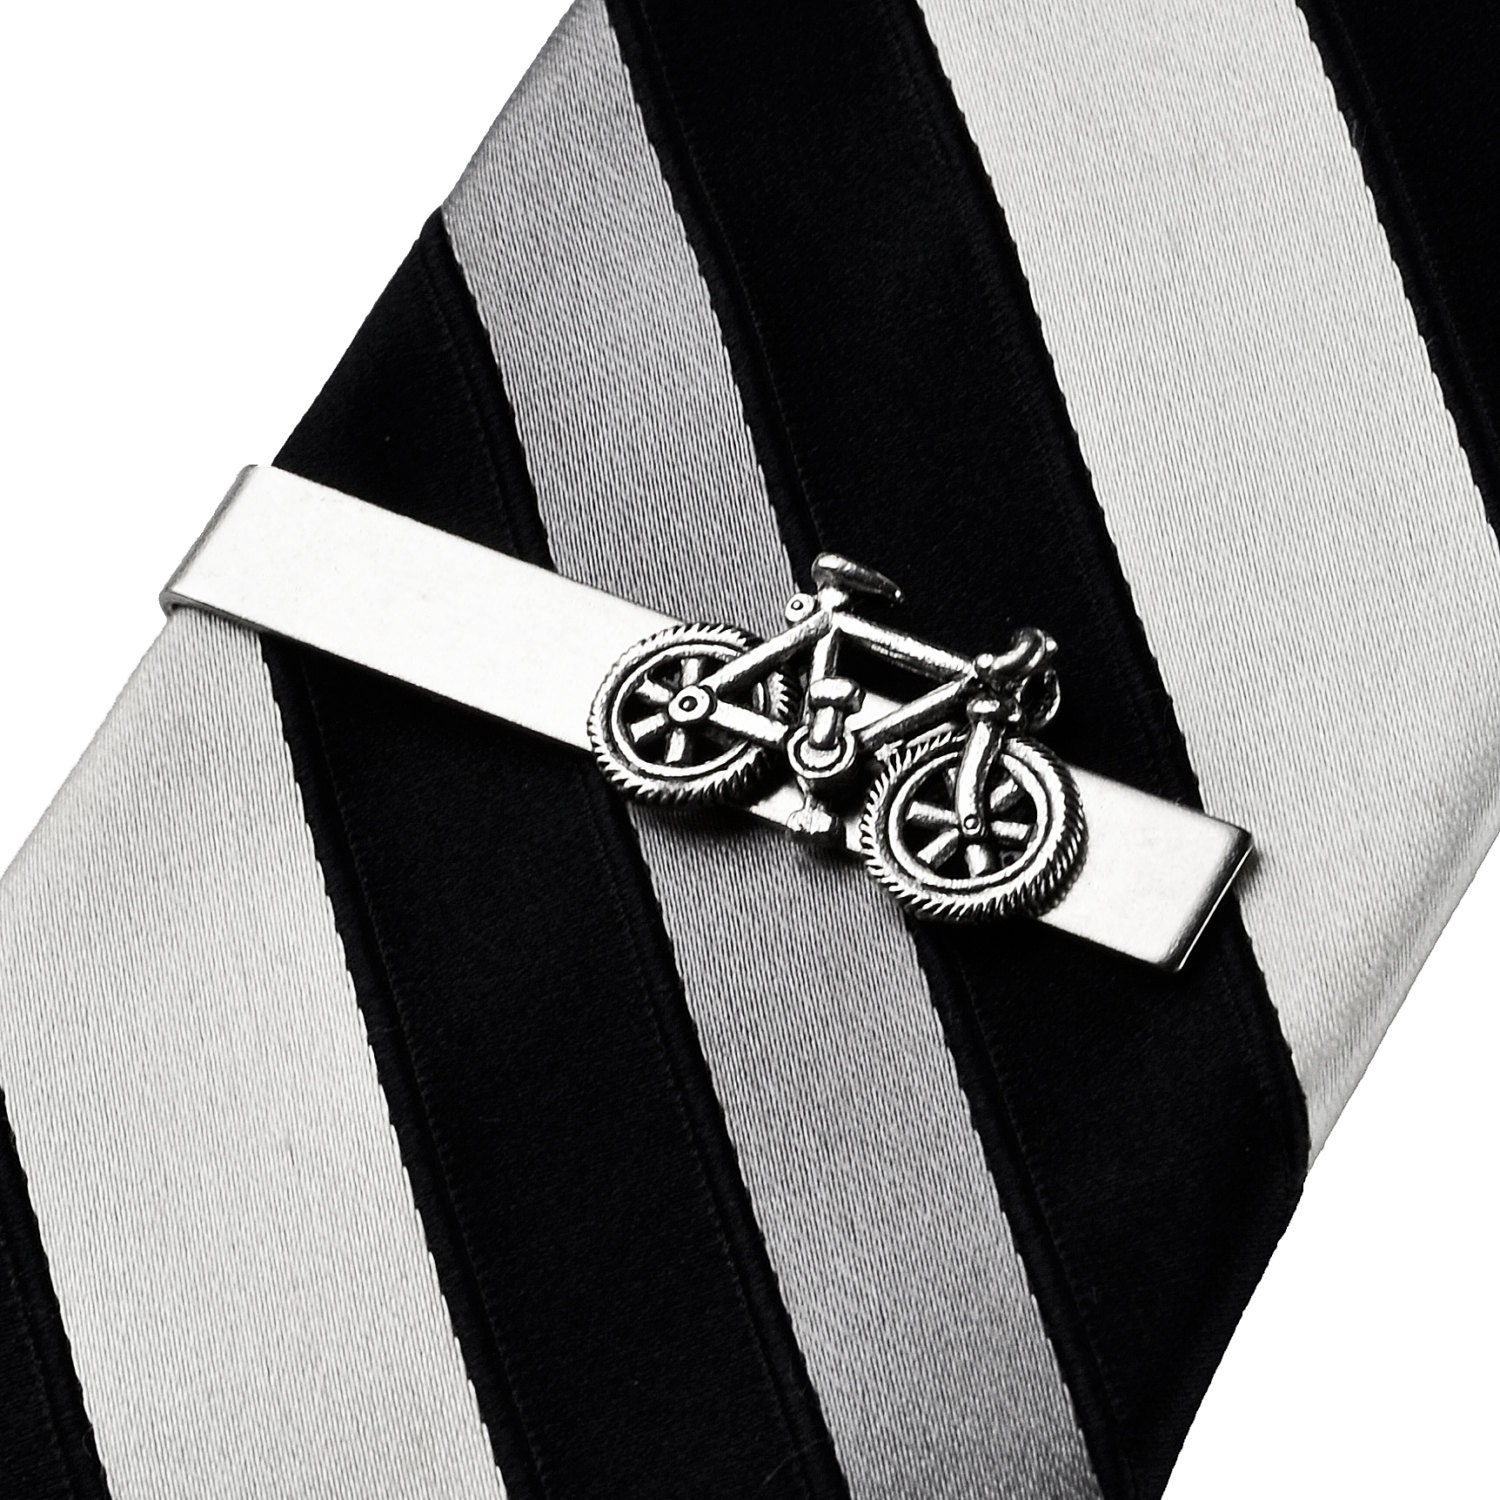 Bicycle Tie Clips, Bike Tie Slides